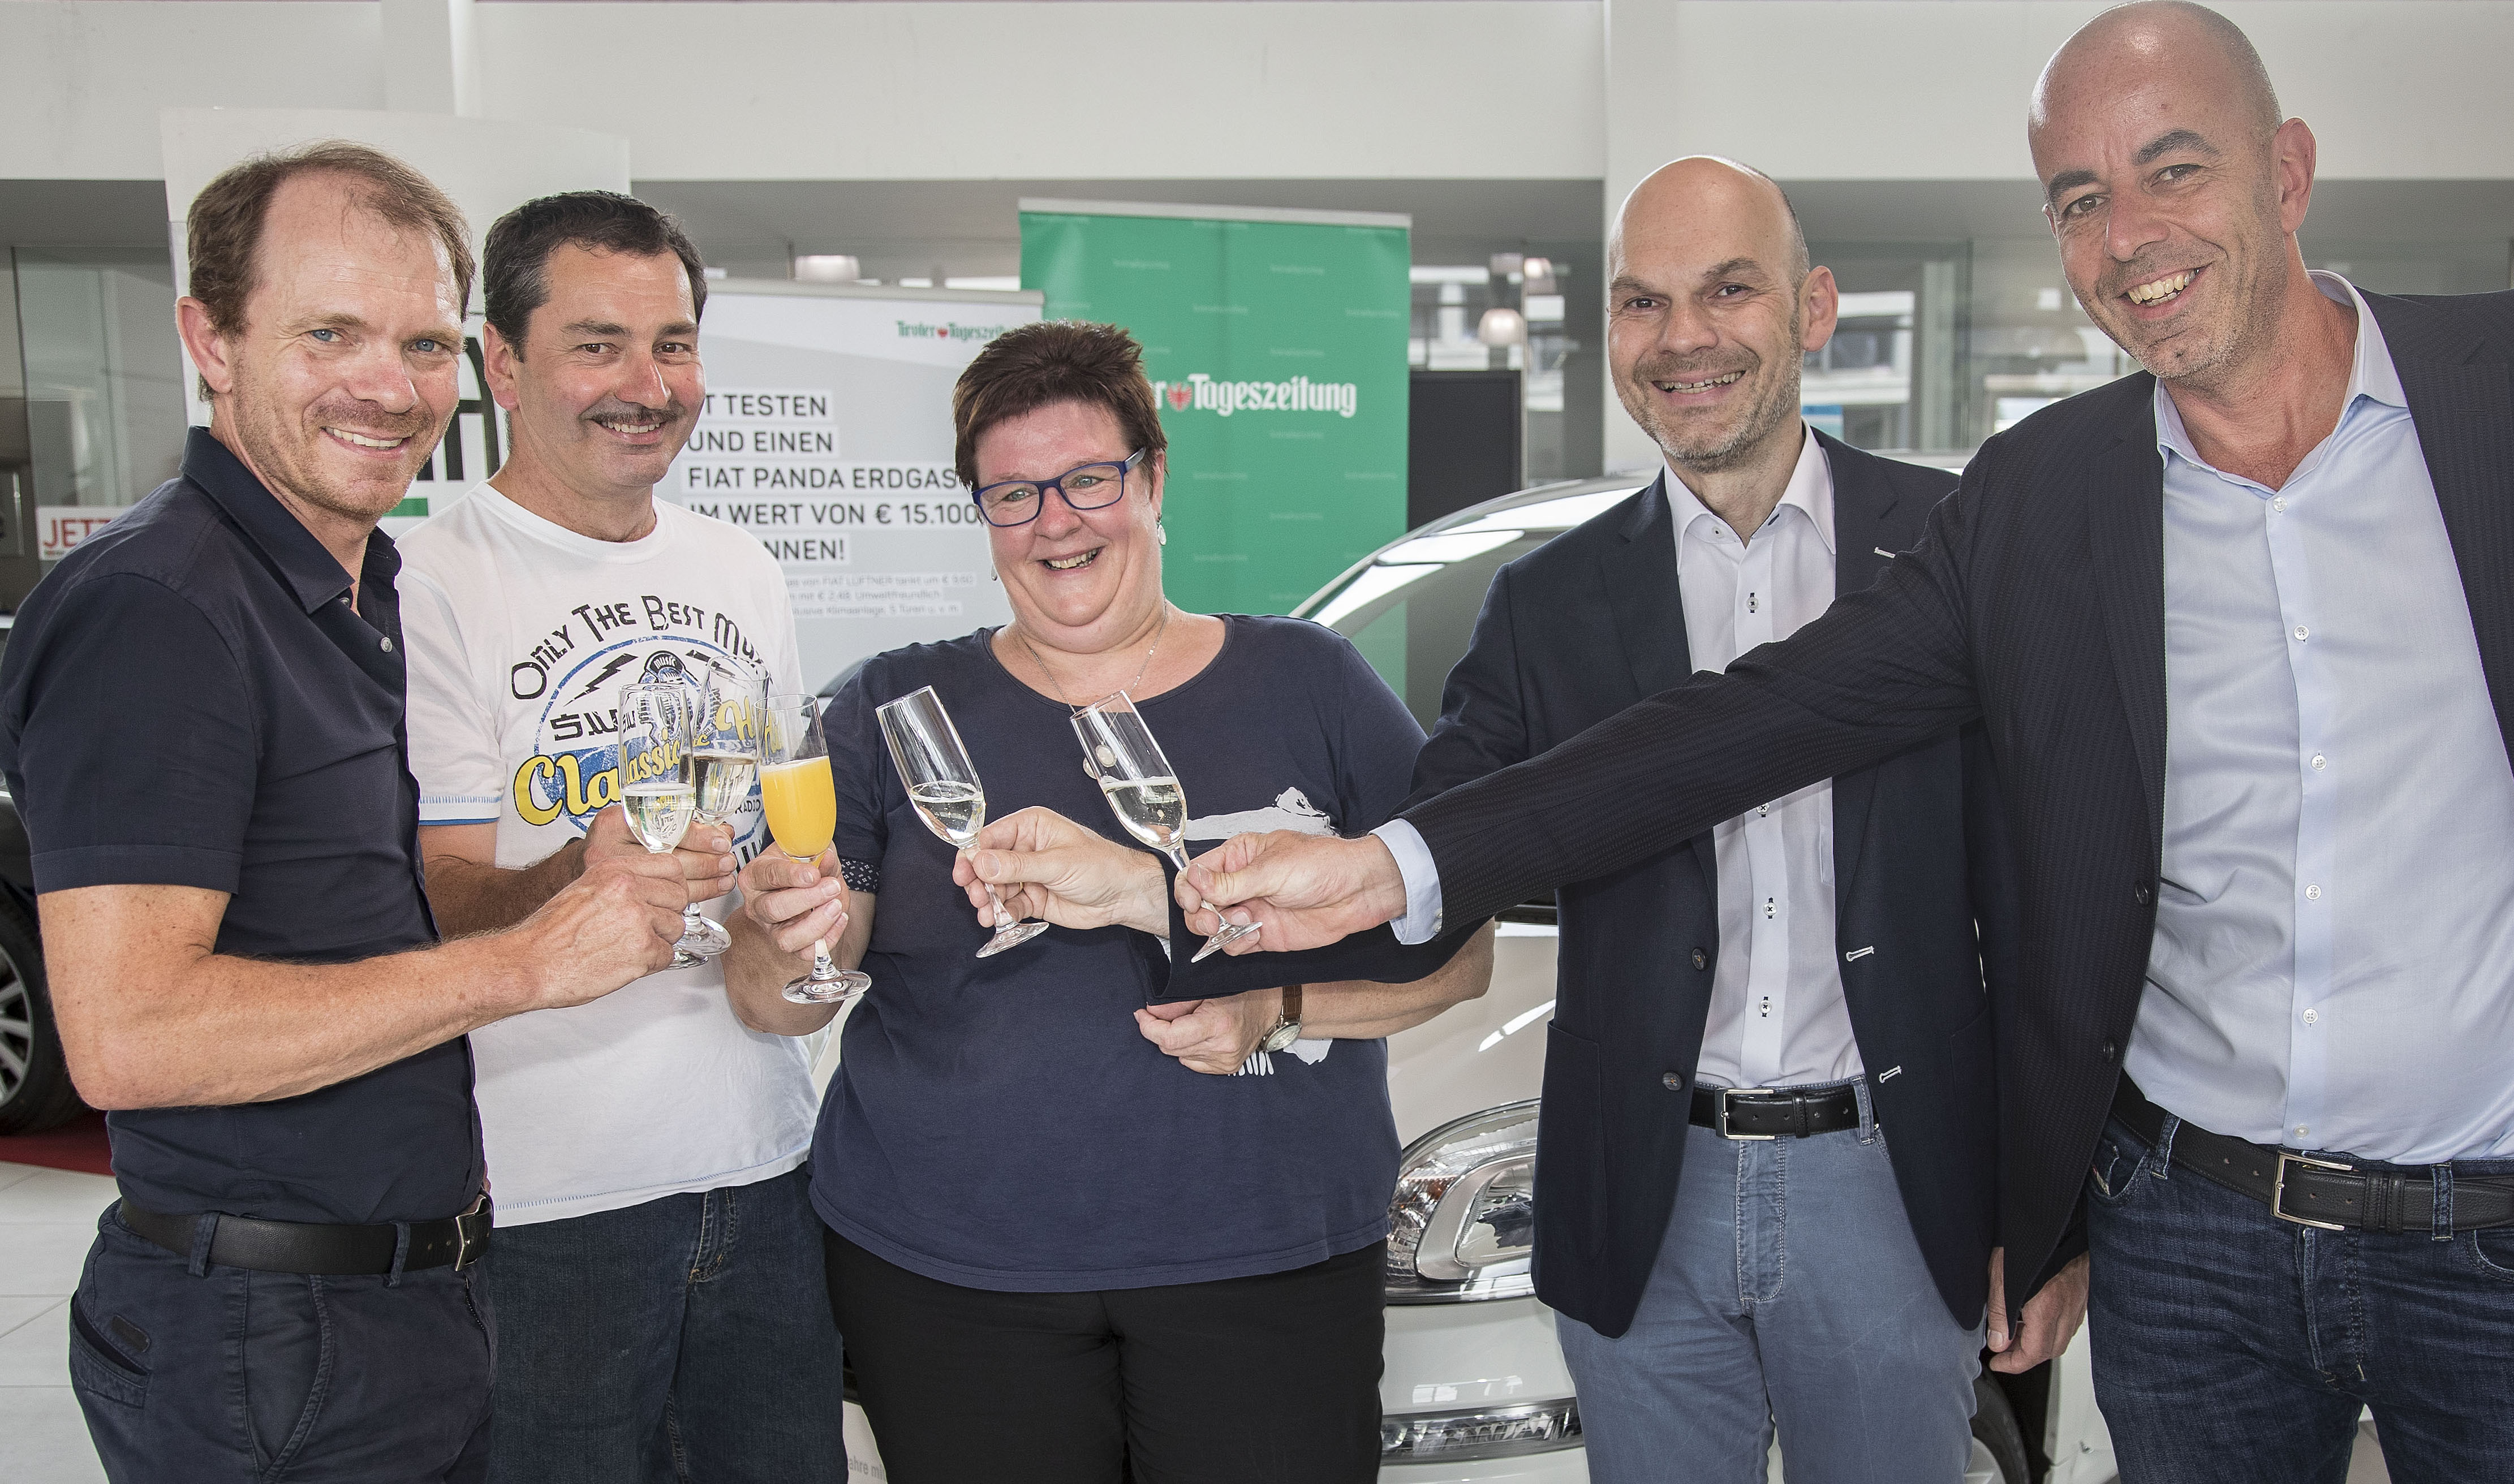 Die Zillertalerin Manuela Arnold gewann einen Fiat Panda Erdgas von Lüftern und der Tiroler Tageszeitung